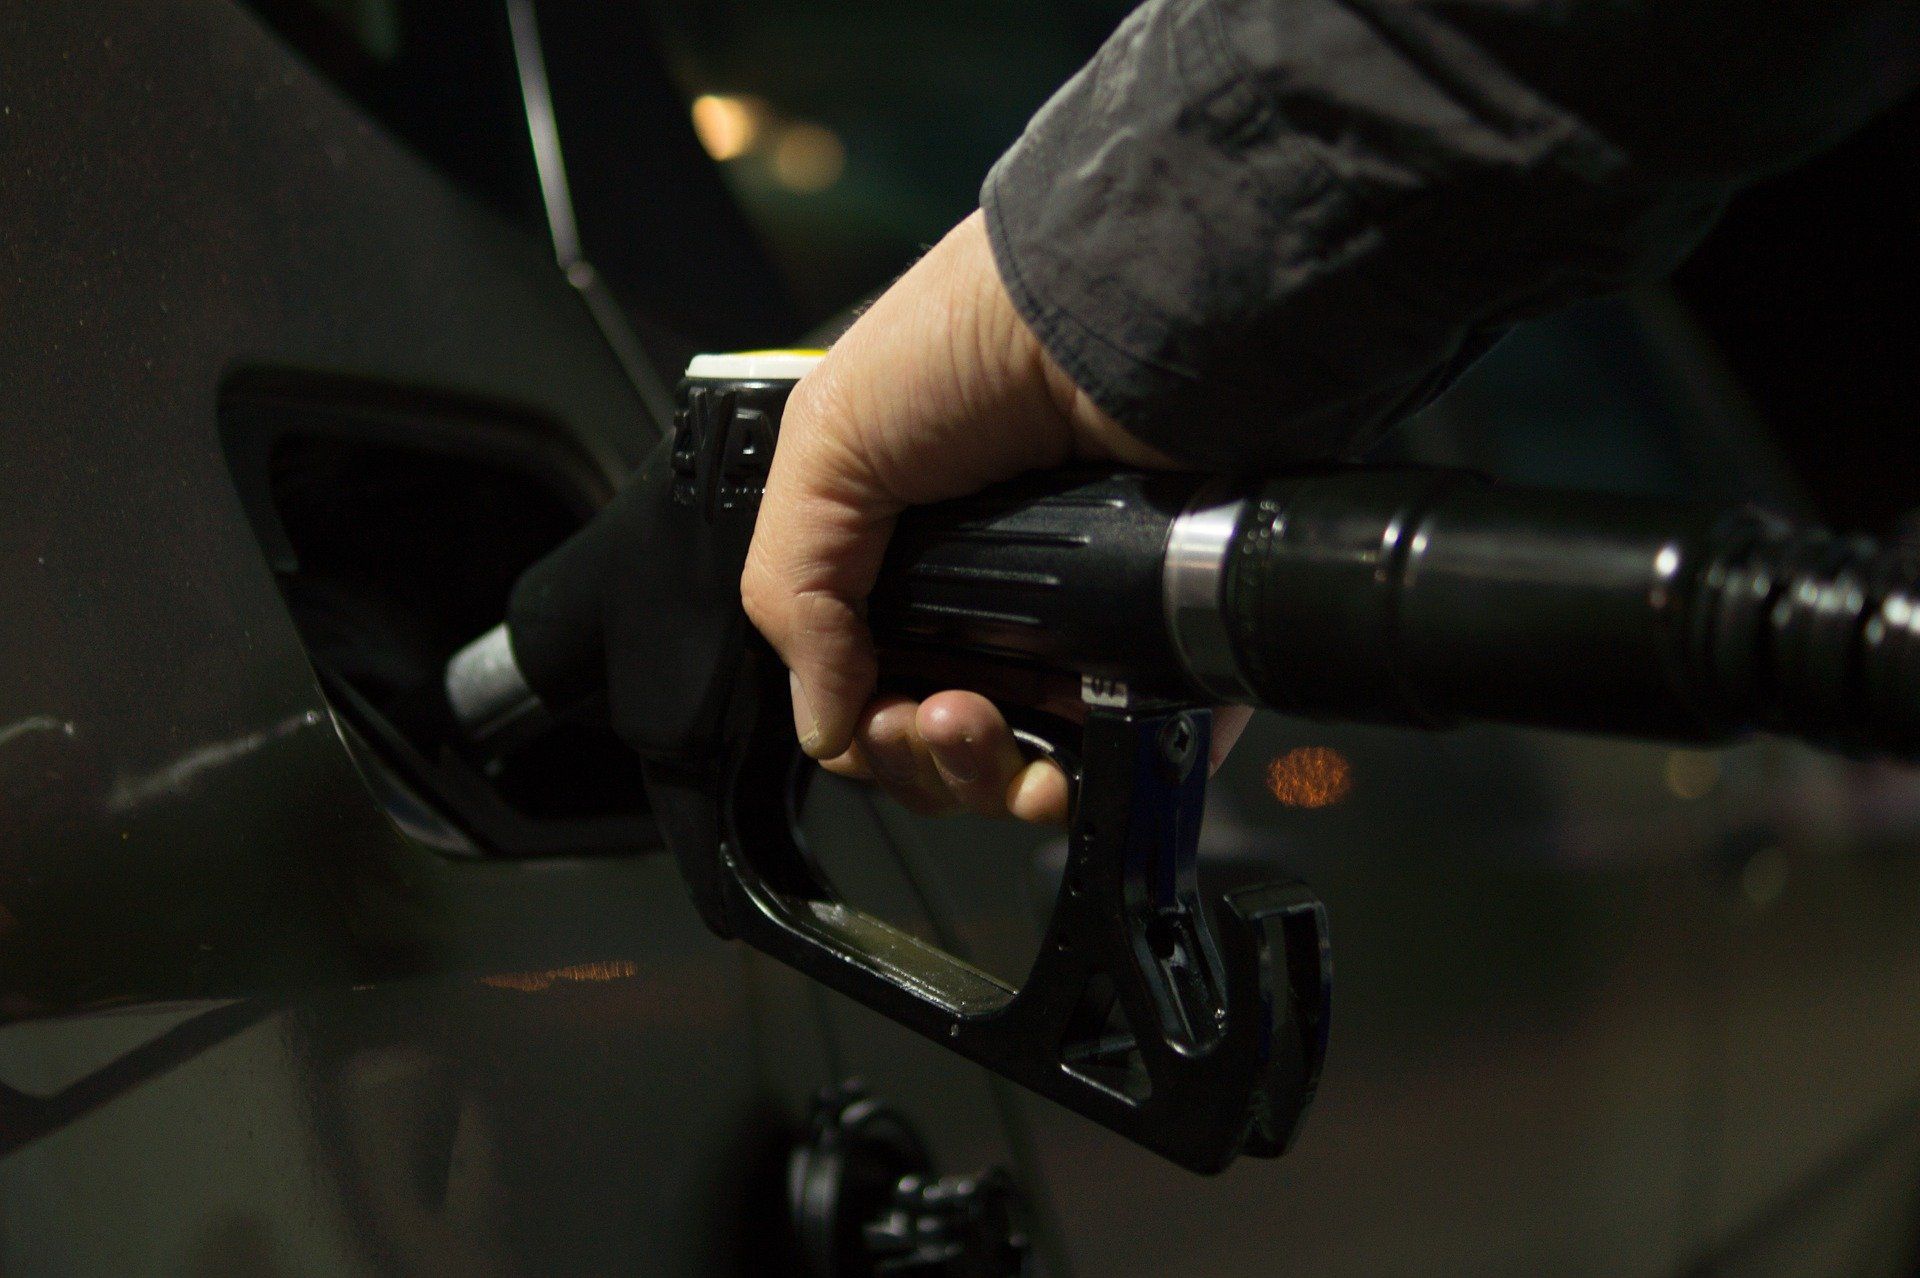 Fuel price June 16, 2022: Petrol Rs 96.72, diesel Rs 89.62 in Delhi